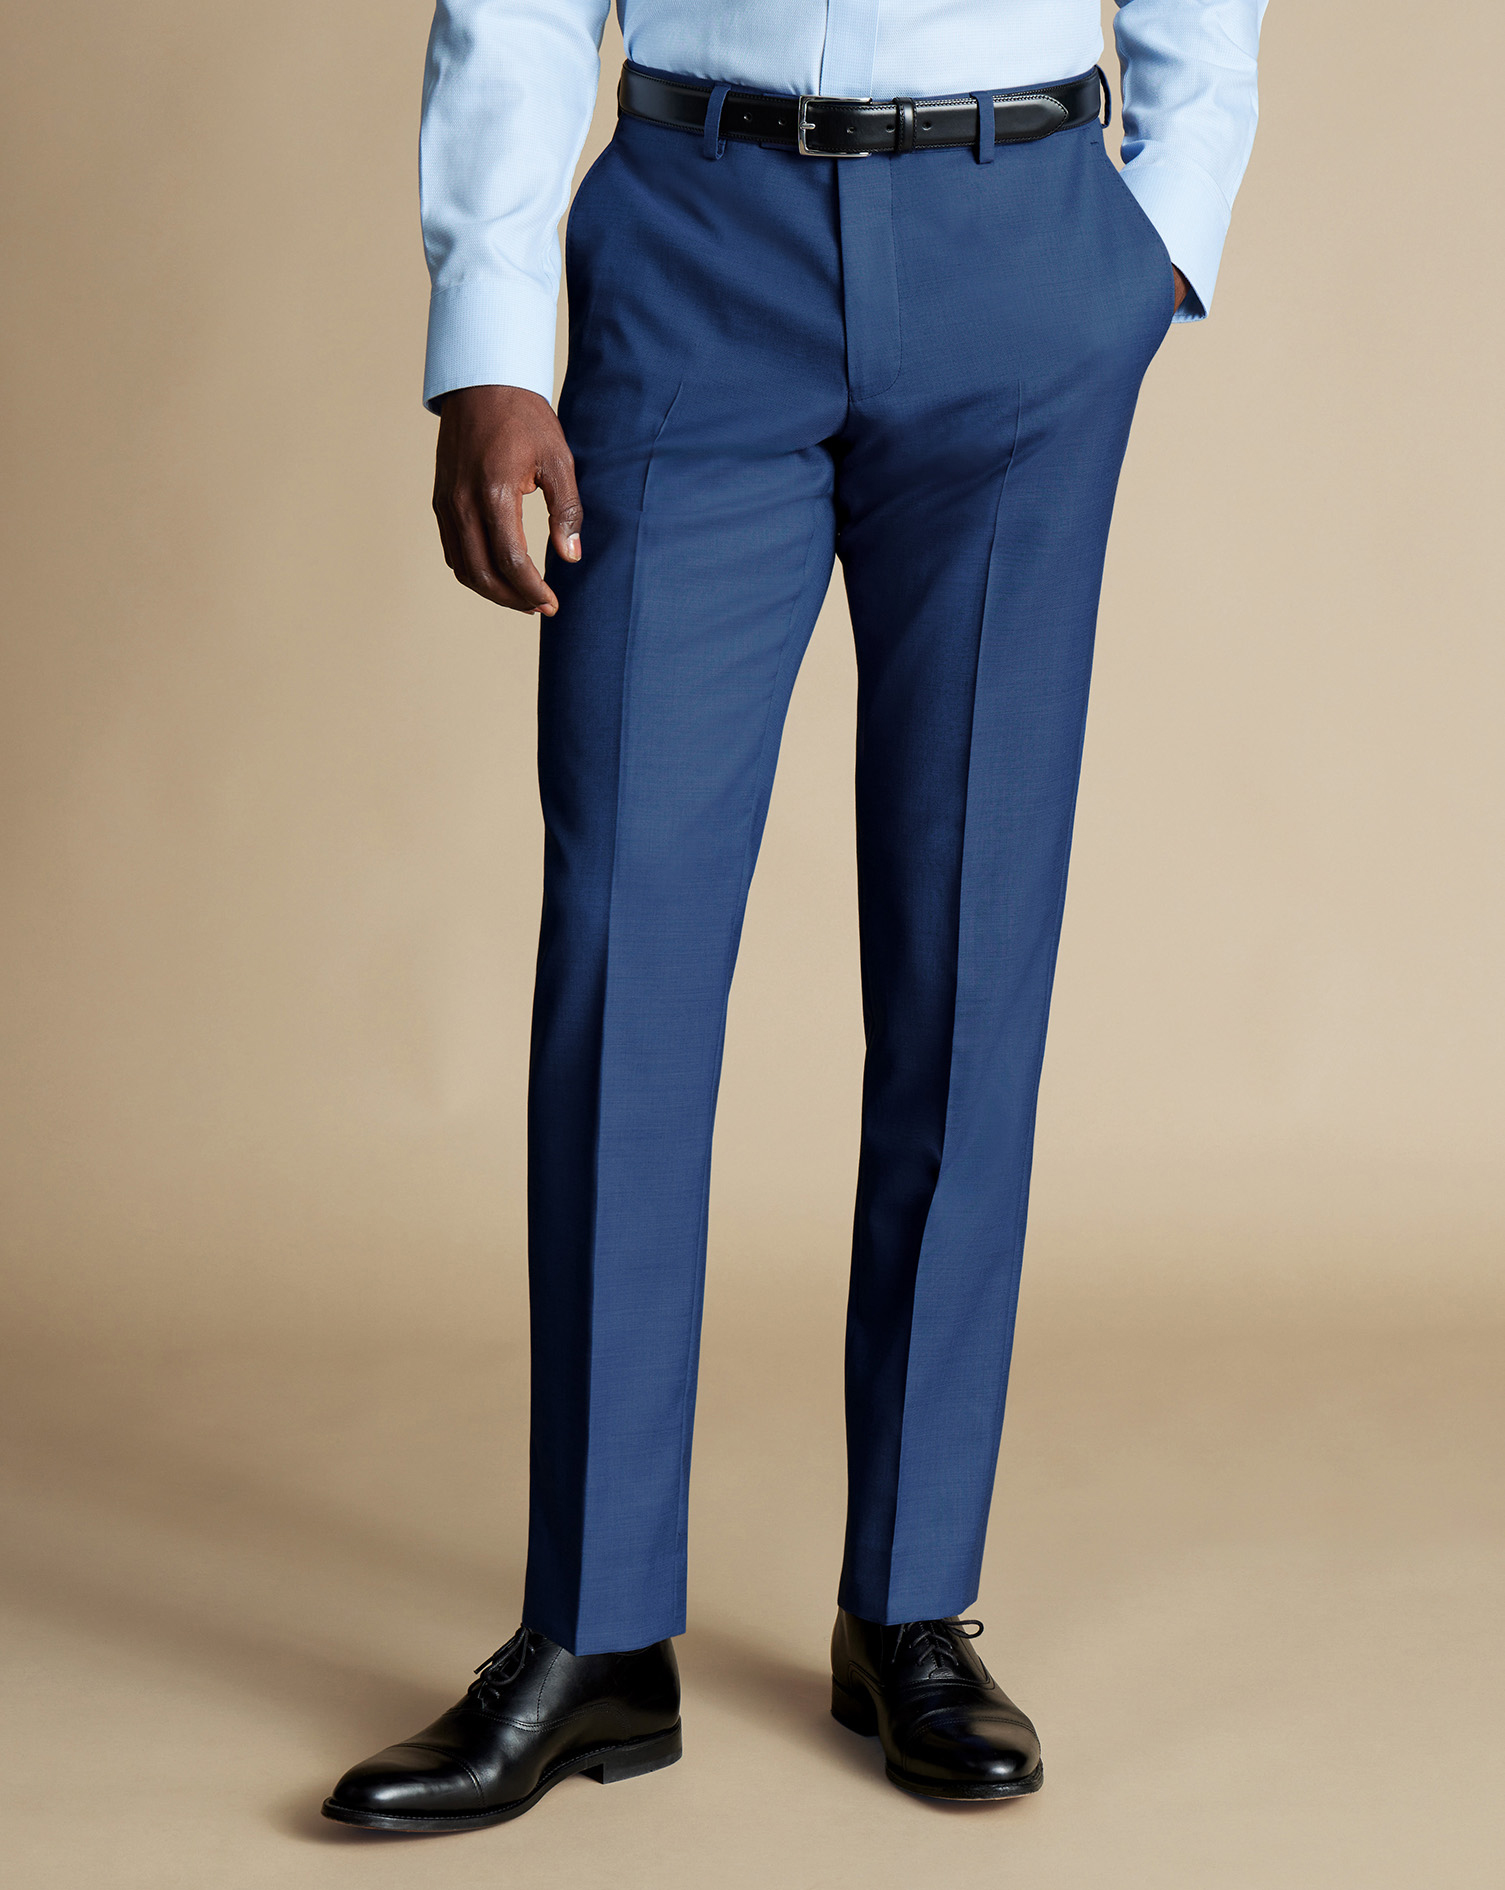 Men's Charles Tyrwhitt Ultimate Performance Sharkskin Suit Trousers - Indigo Blue Size 40/32
